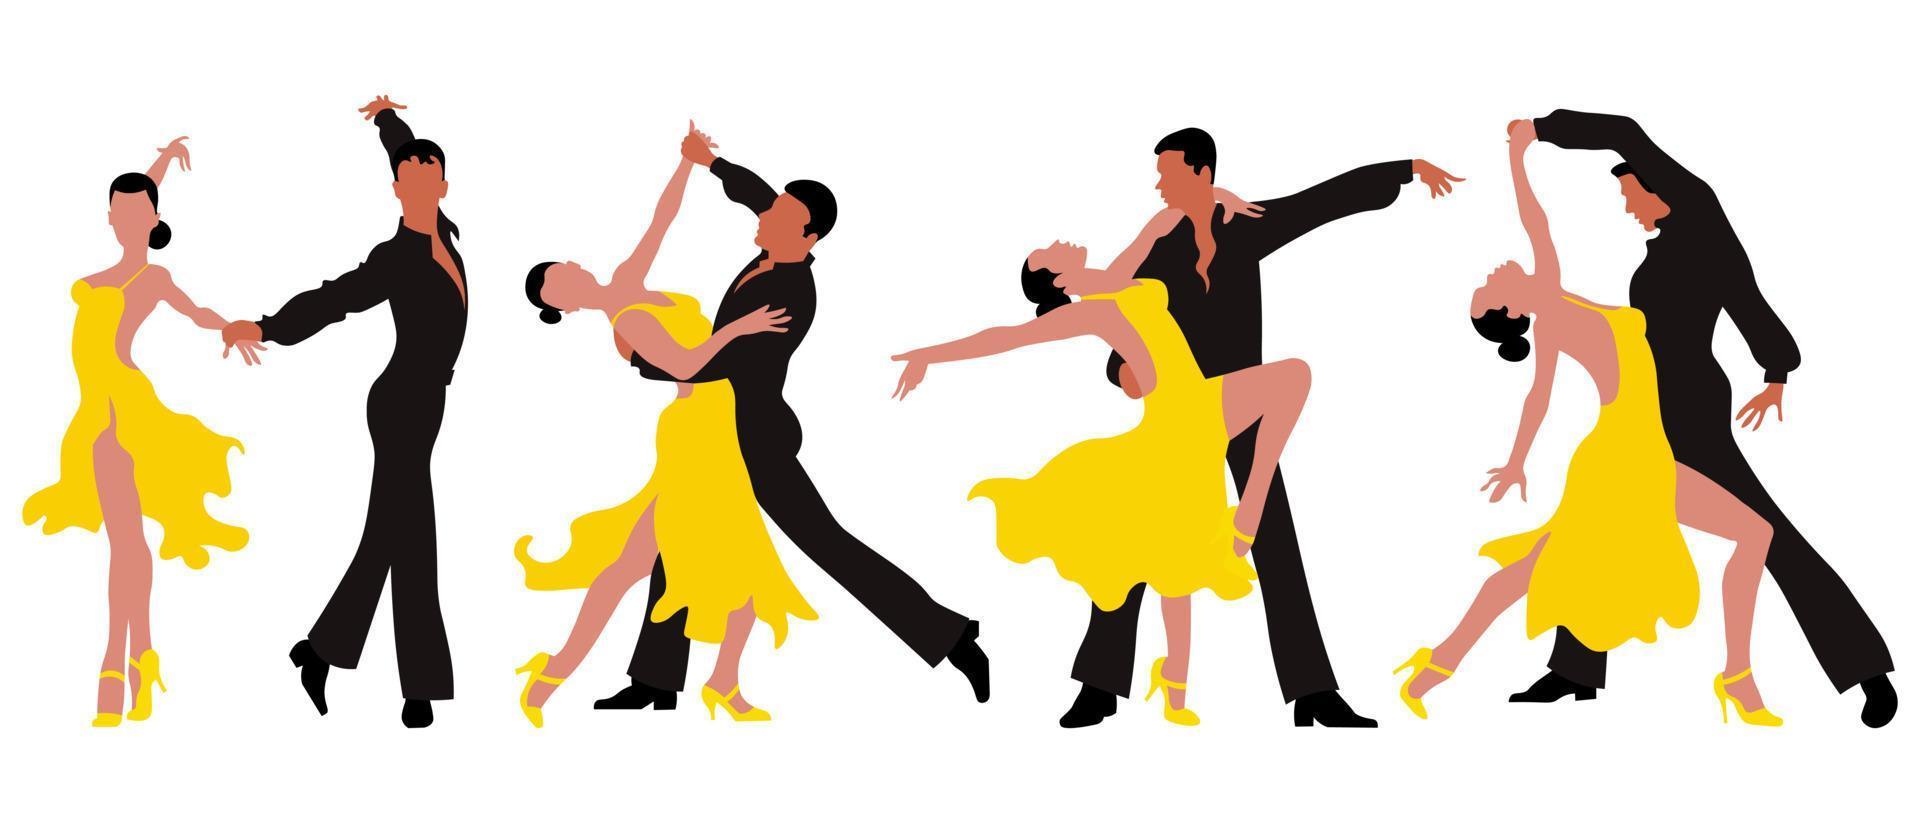 um conjunto de ilustrações, casais dançando, um homem de preto e uma mulher de vestido amarelo em poses elegantes. cartaz, impressão, cartão postal vetor